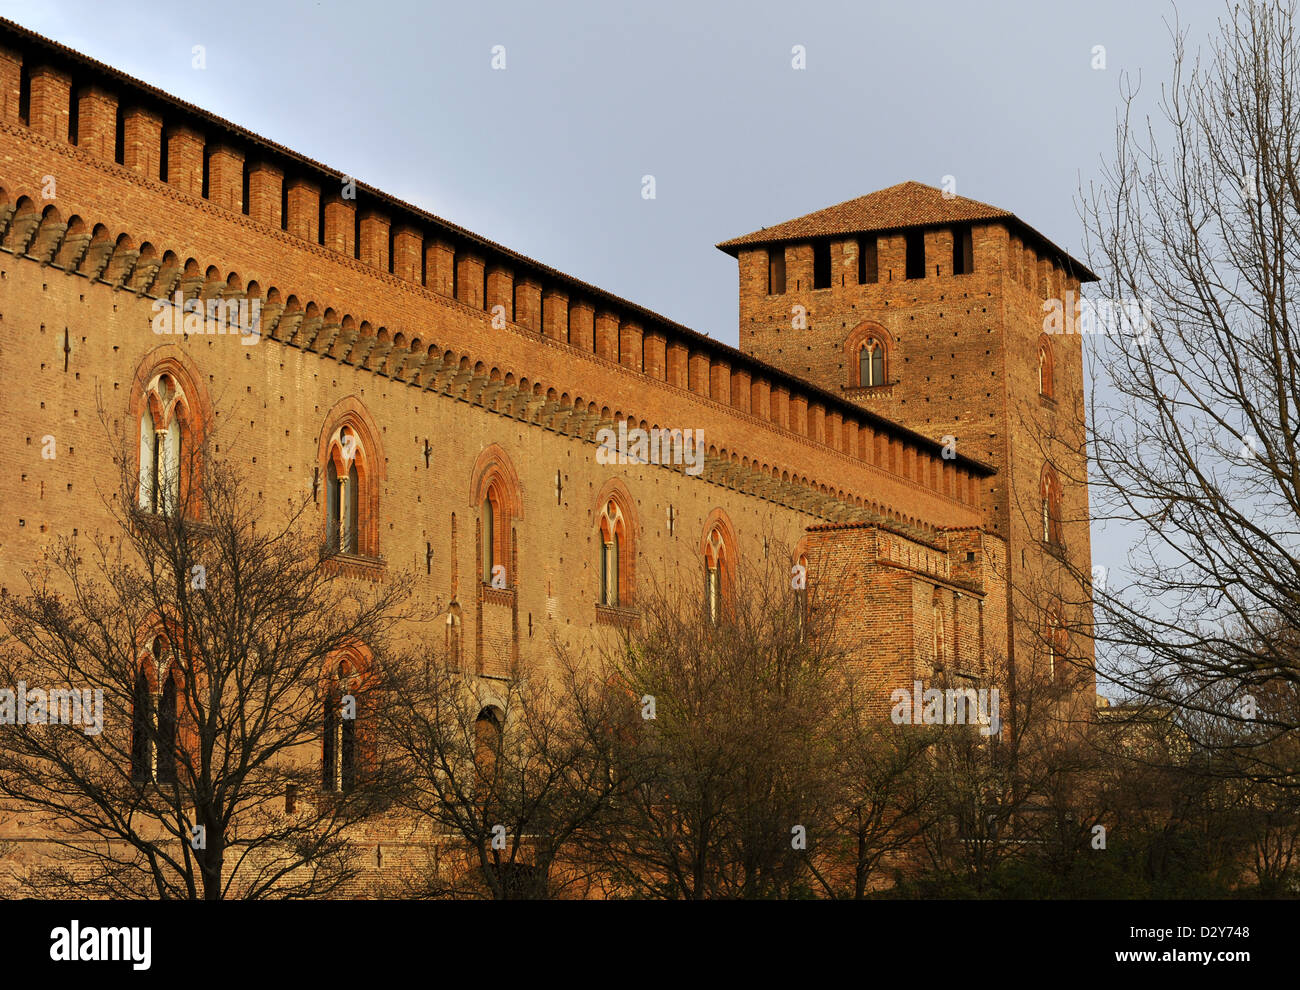 Italien. Pavia. Die Burg der Visconti. Erbaut zwischen 1360-1366 von Galeazzo II Visconti (1320-1378). Ist heute das städtische Museum. Stockfoto